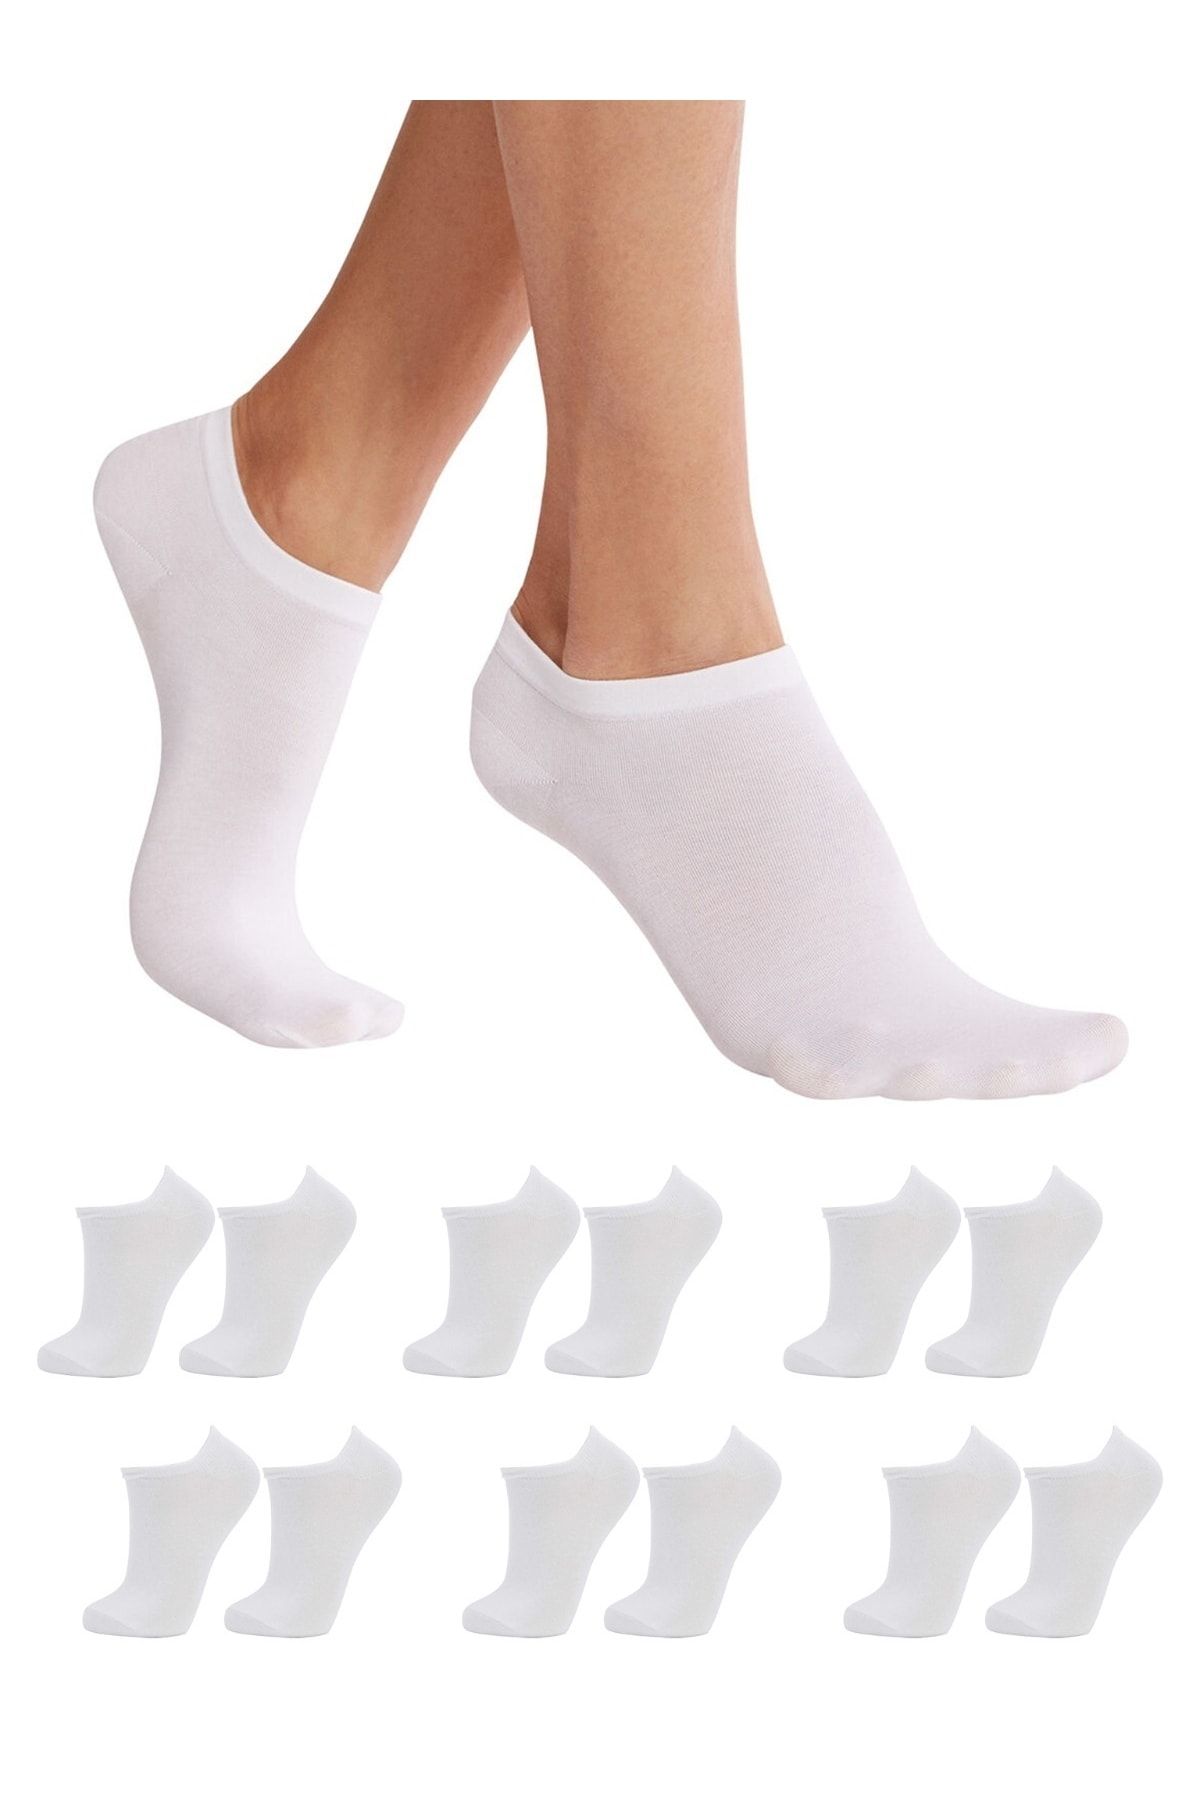 DORE Görünmez Sneakers Beyaz Kadın Spor Ayakkabı Çorabı 6 Çift